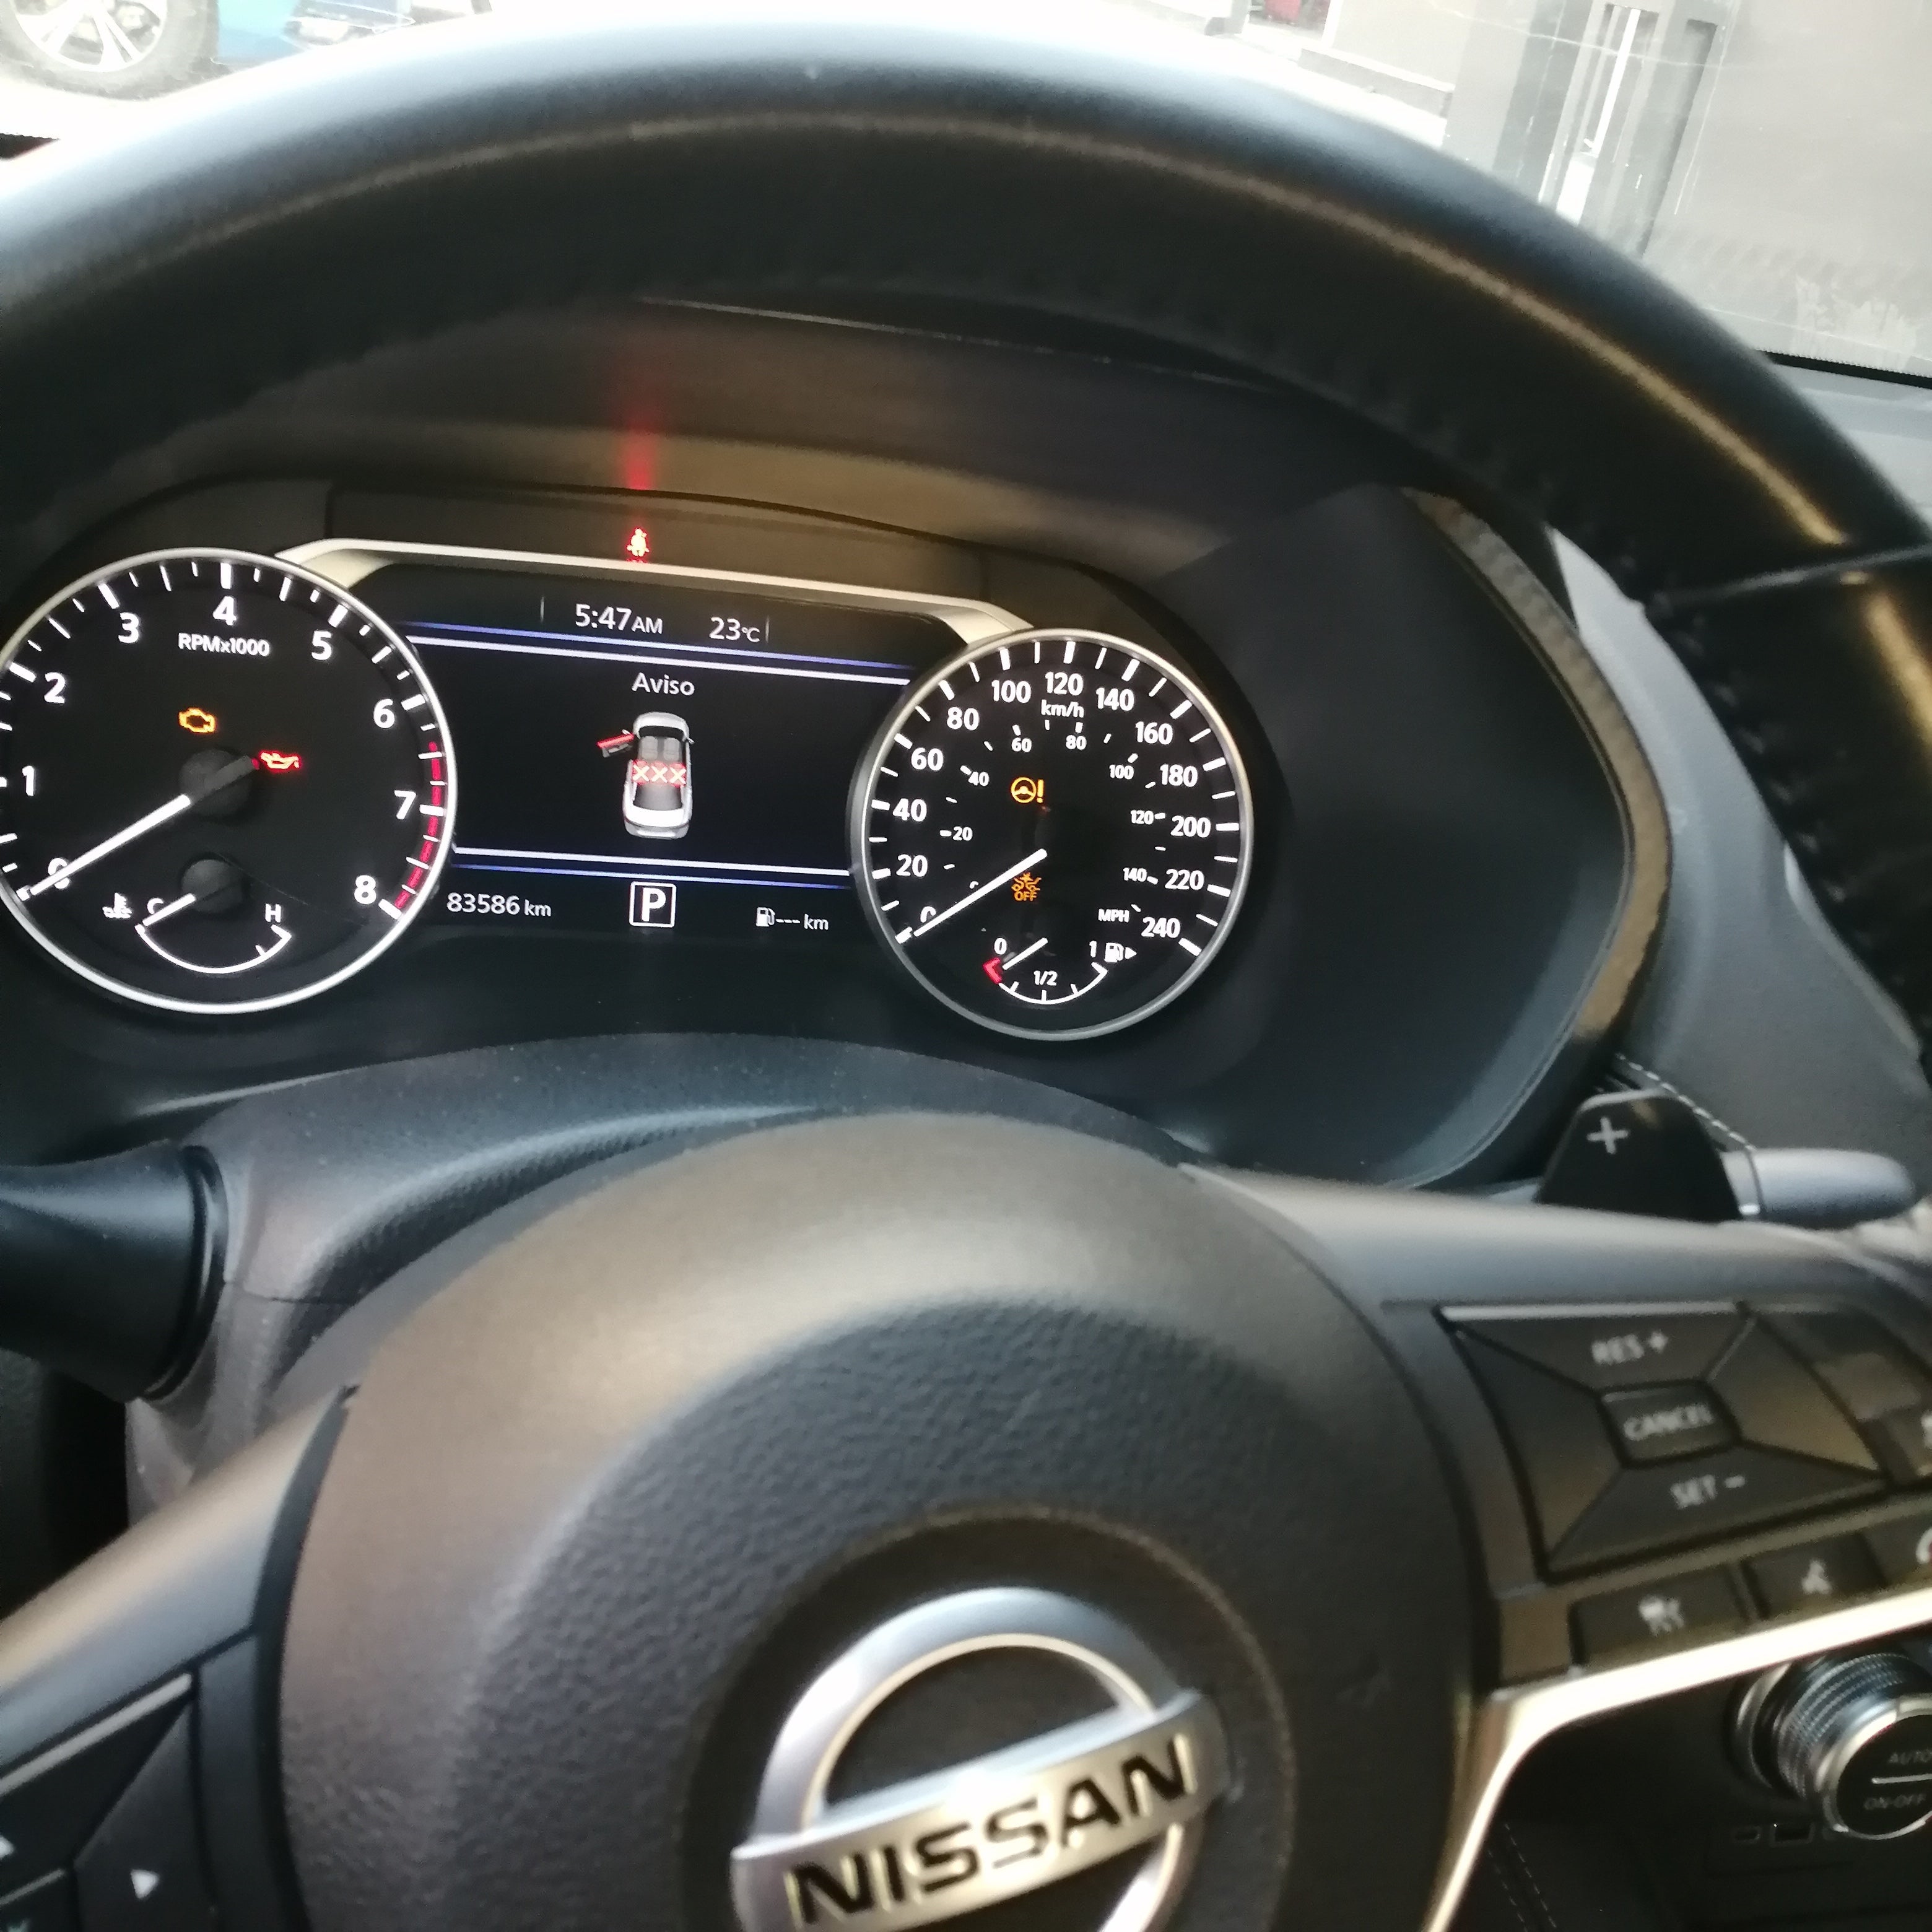 2020 Nissan Sentra EXCLUSIVE L4 2.0L 145 CP 4 PUERTAS AUT PIEL BA AA QC